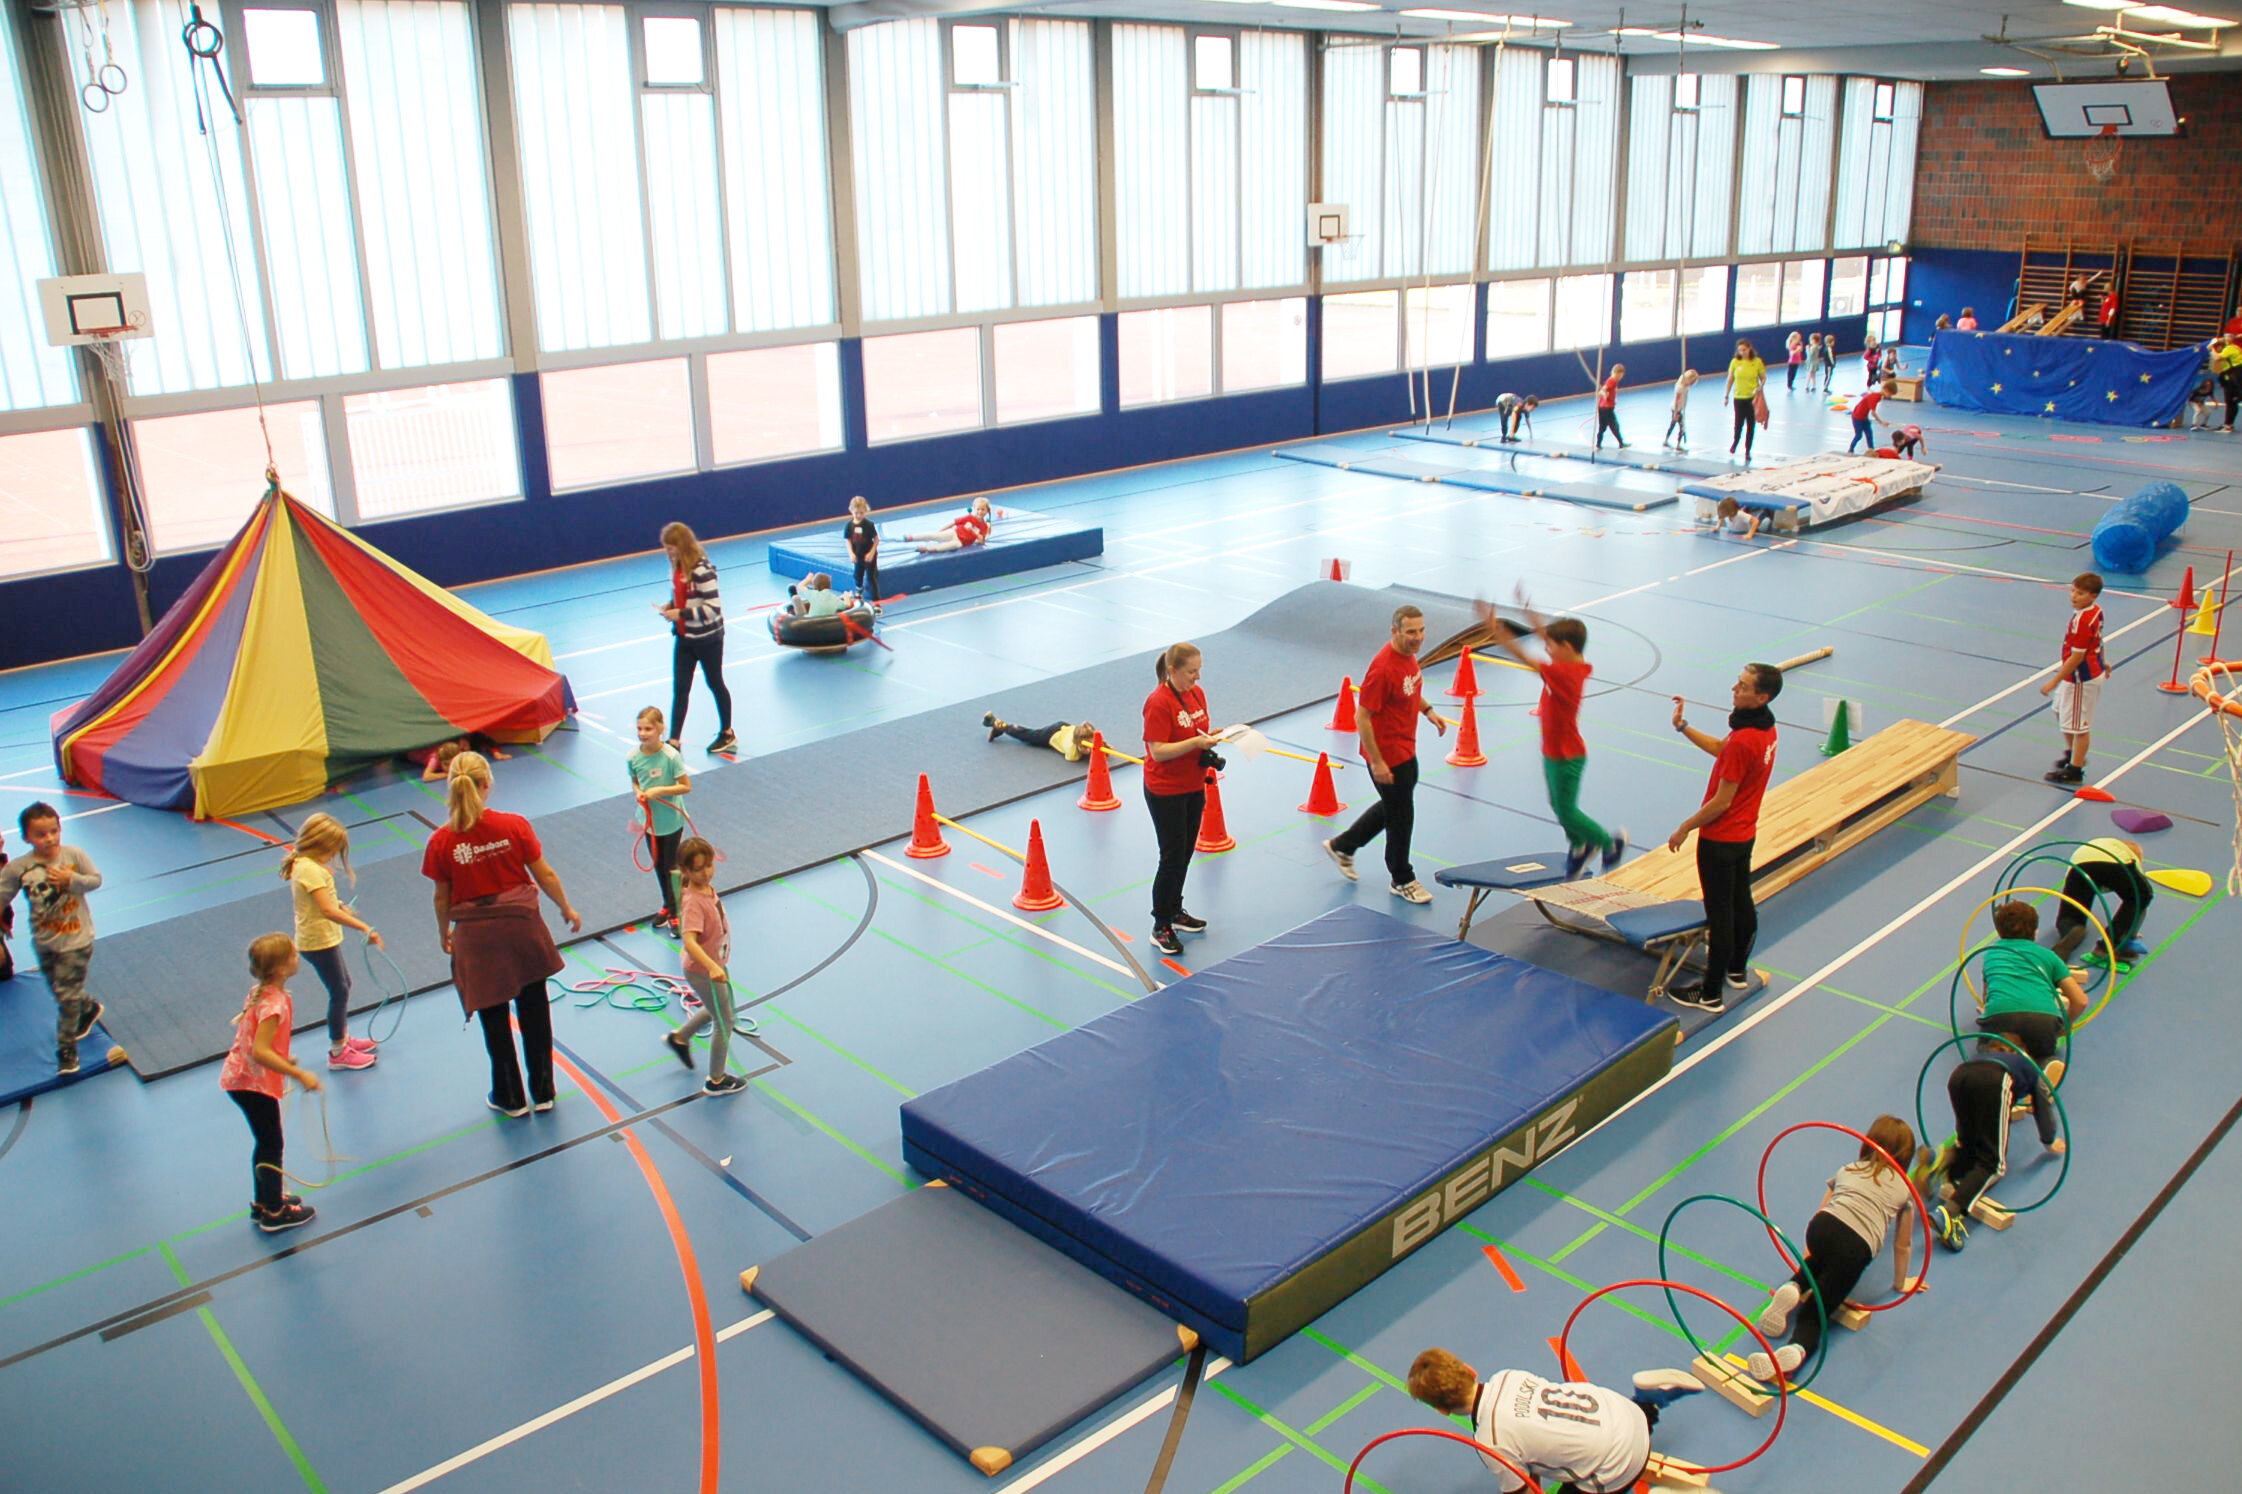 Kinder spielen in einer Halle mit vielen Spiel- und Sportgeräten.